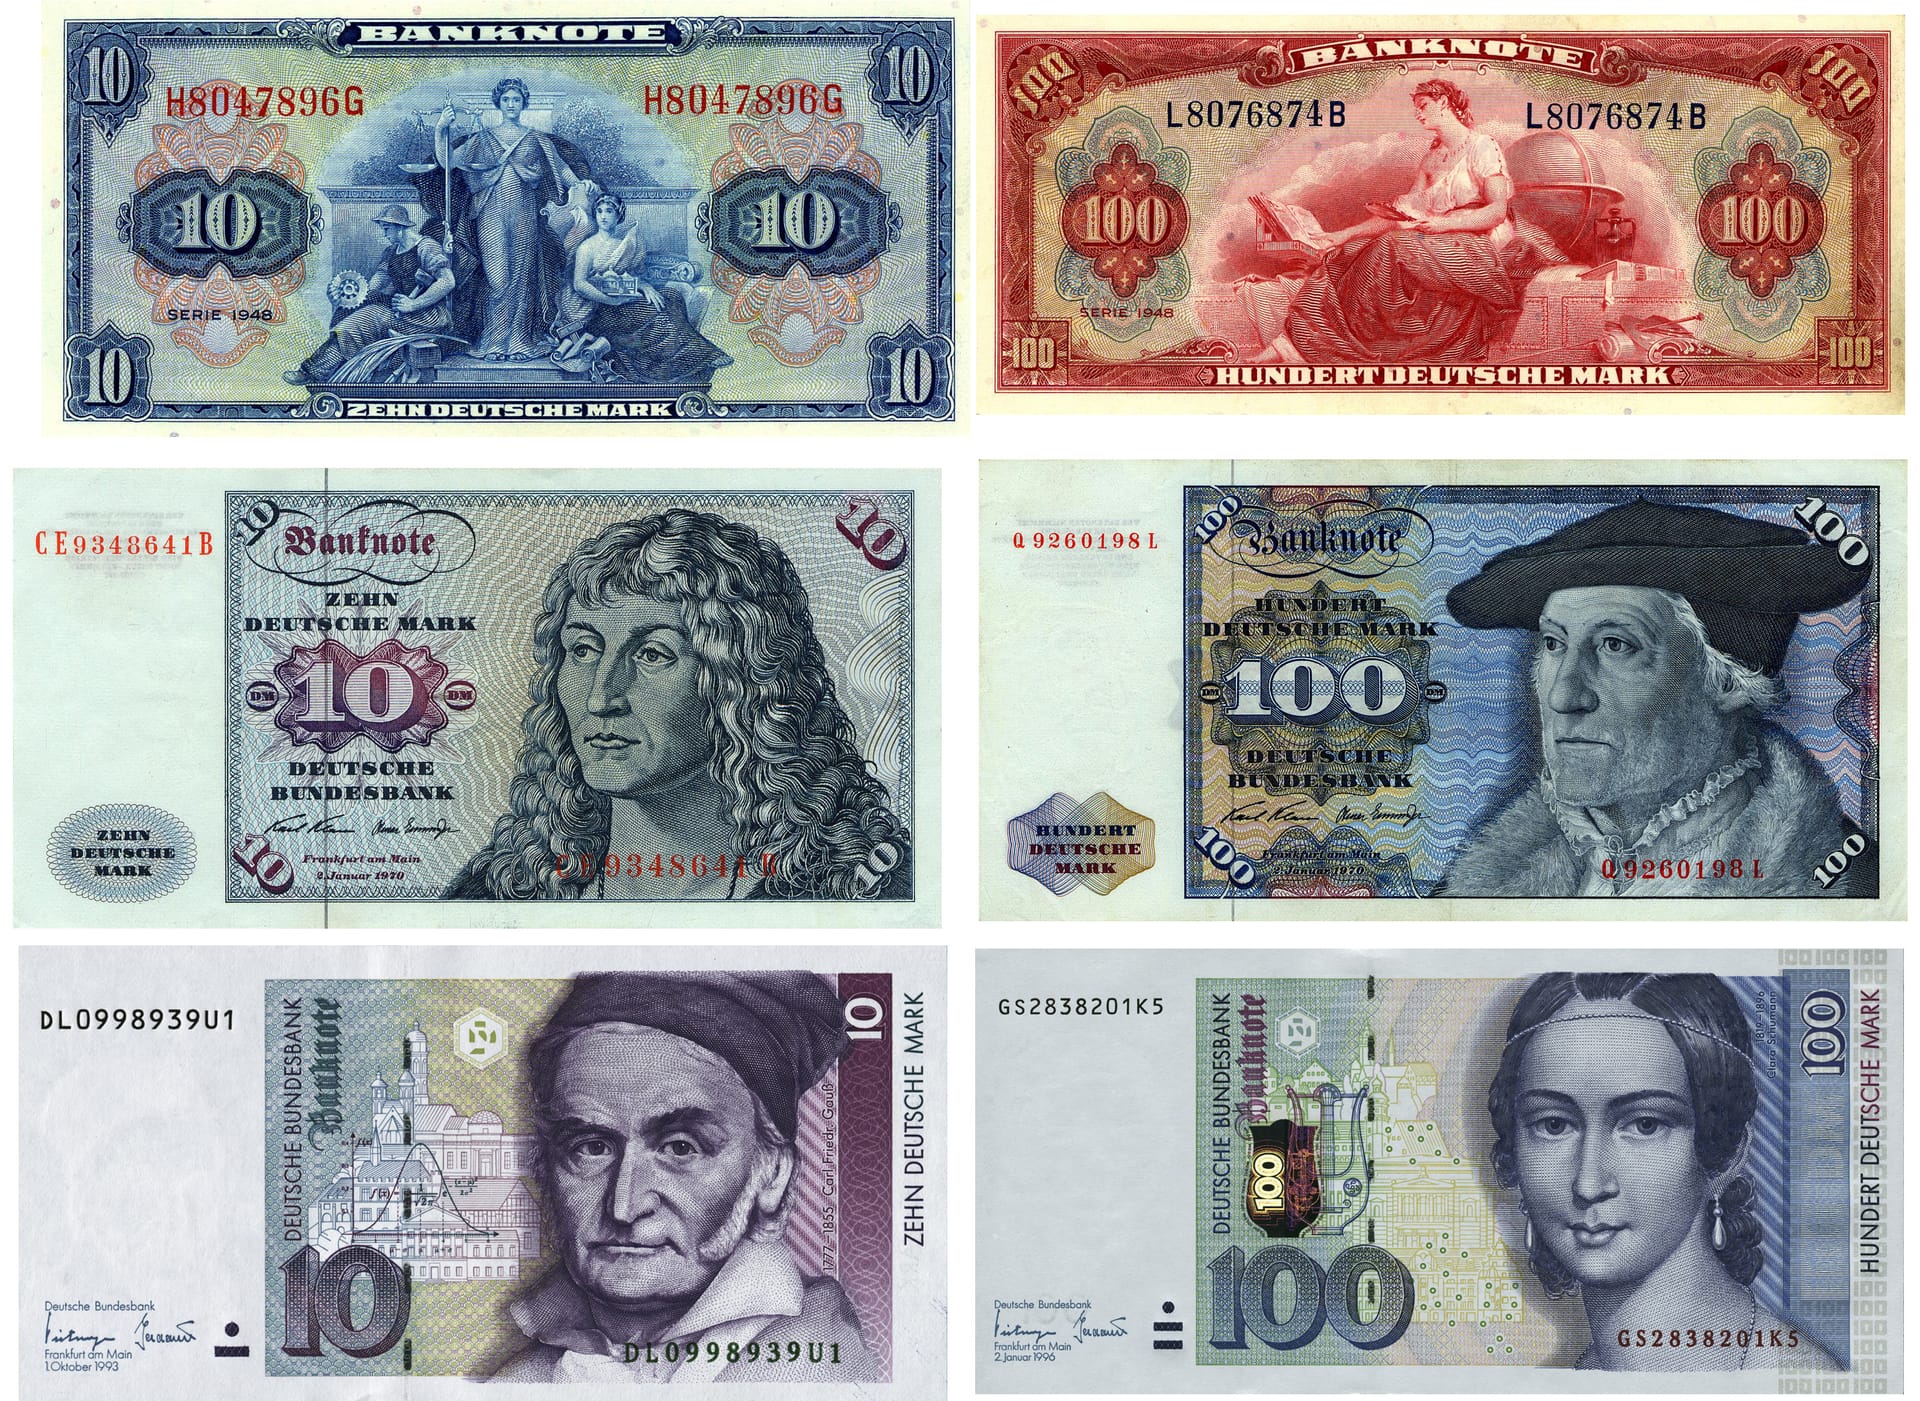 Banknoten zu 10 und 100 DM von 1948 bis 2001: Die Kombo zeigt die 10 und 100 DM Banknoten aus dem Jahr 1948 (oben), 1963 und 1962 (Mitte, l-r) und aus den Jahren 1991 und 1997 (unten, l-r).